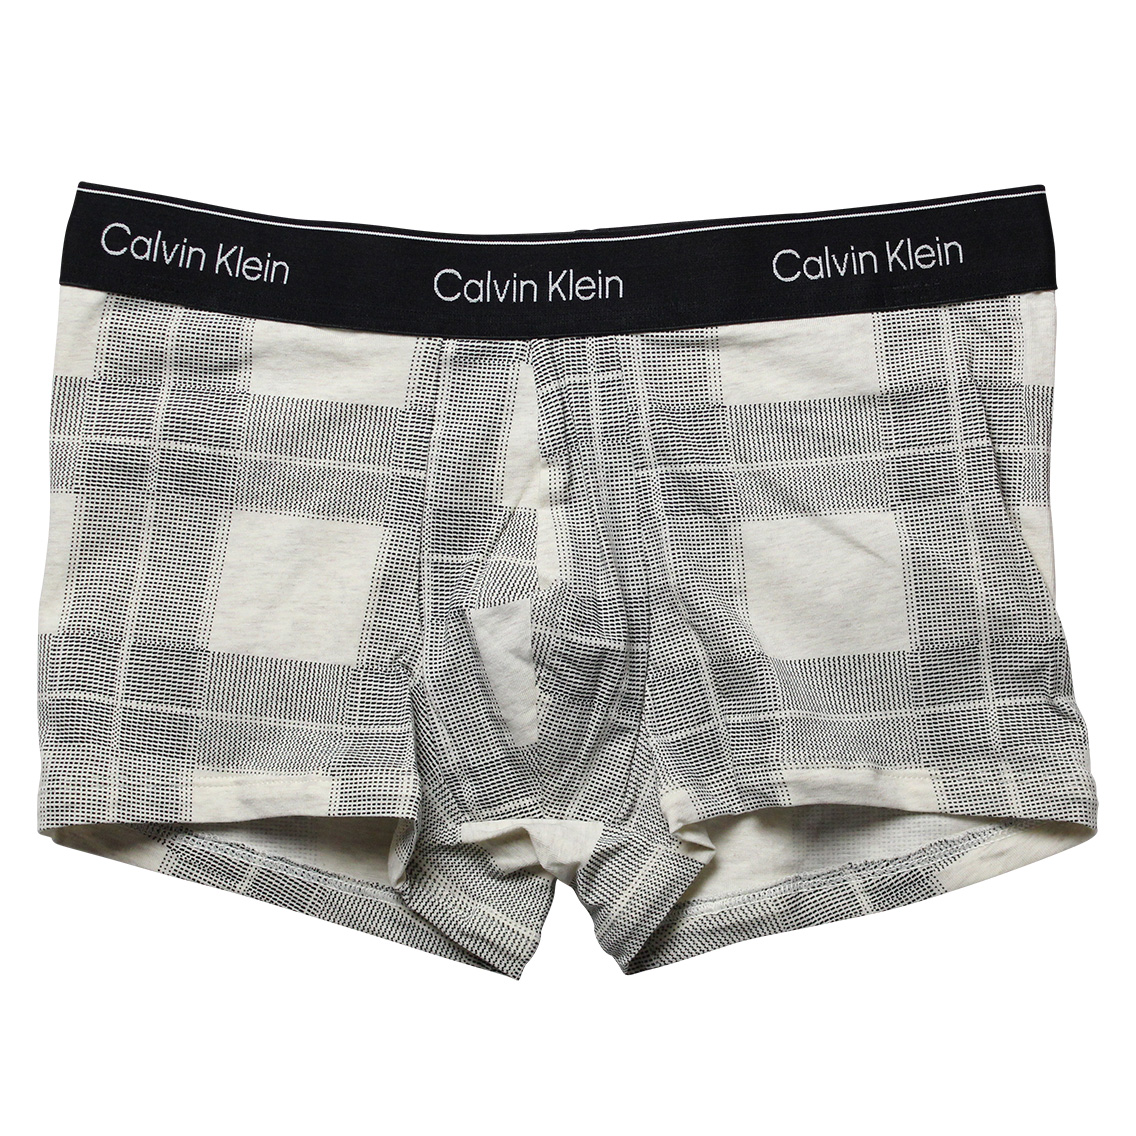 【ネコポス可:2点まで】[NB3359-100] Calvin Klein カルバンクライン ボクサーパンツ メンズ アンダーウェア インナー 男性 下着 ブラン